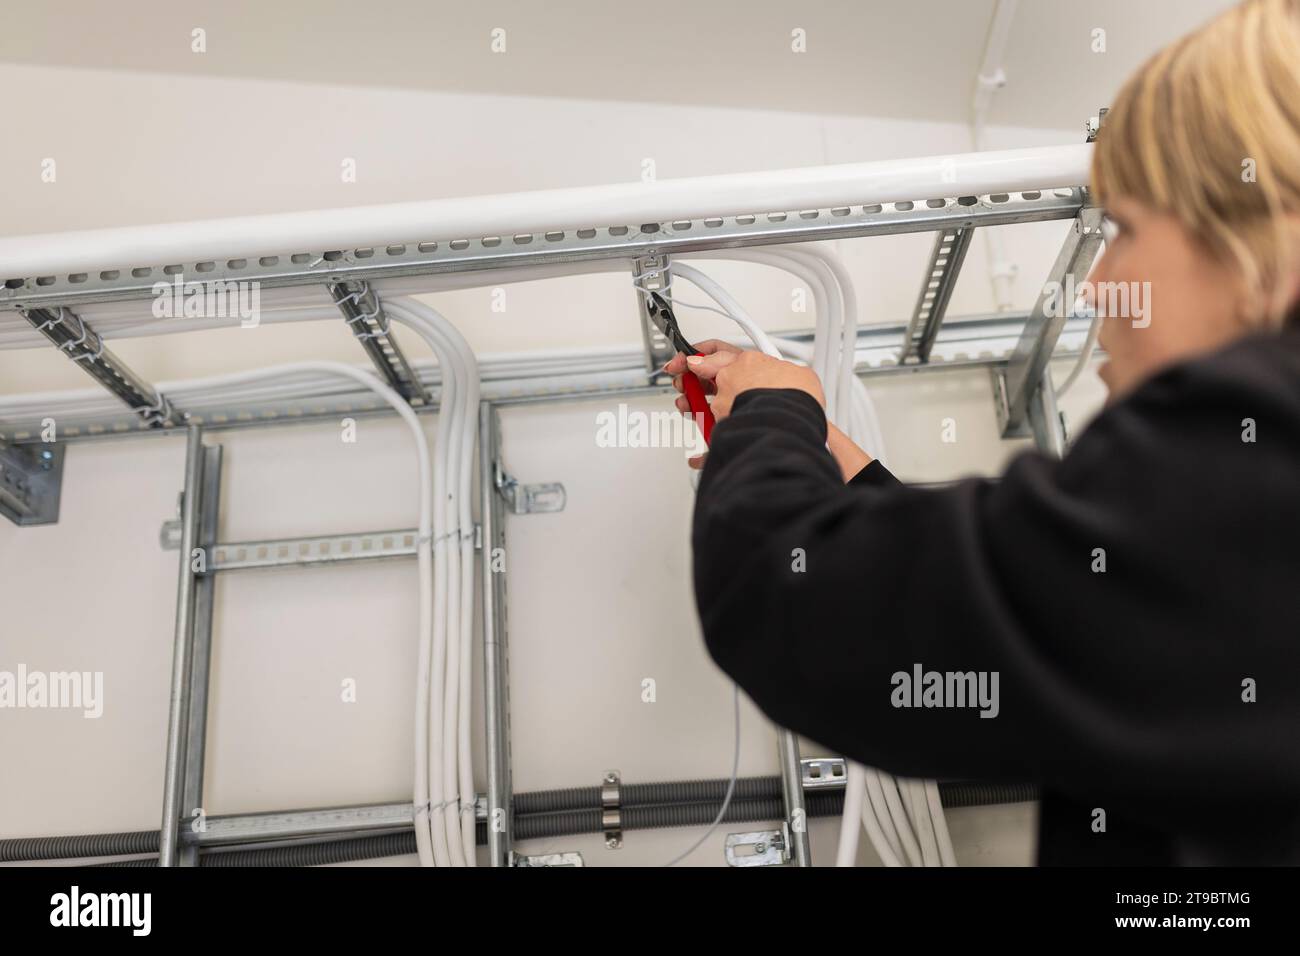 Technicien féminin installant des câbles dans l'industrie Banque D'Images